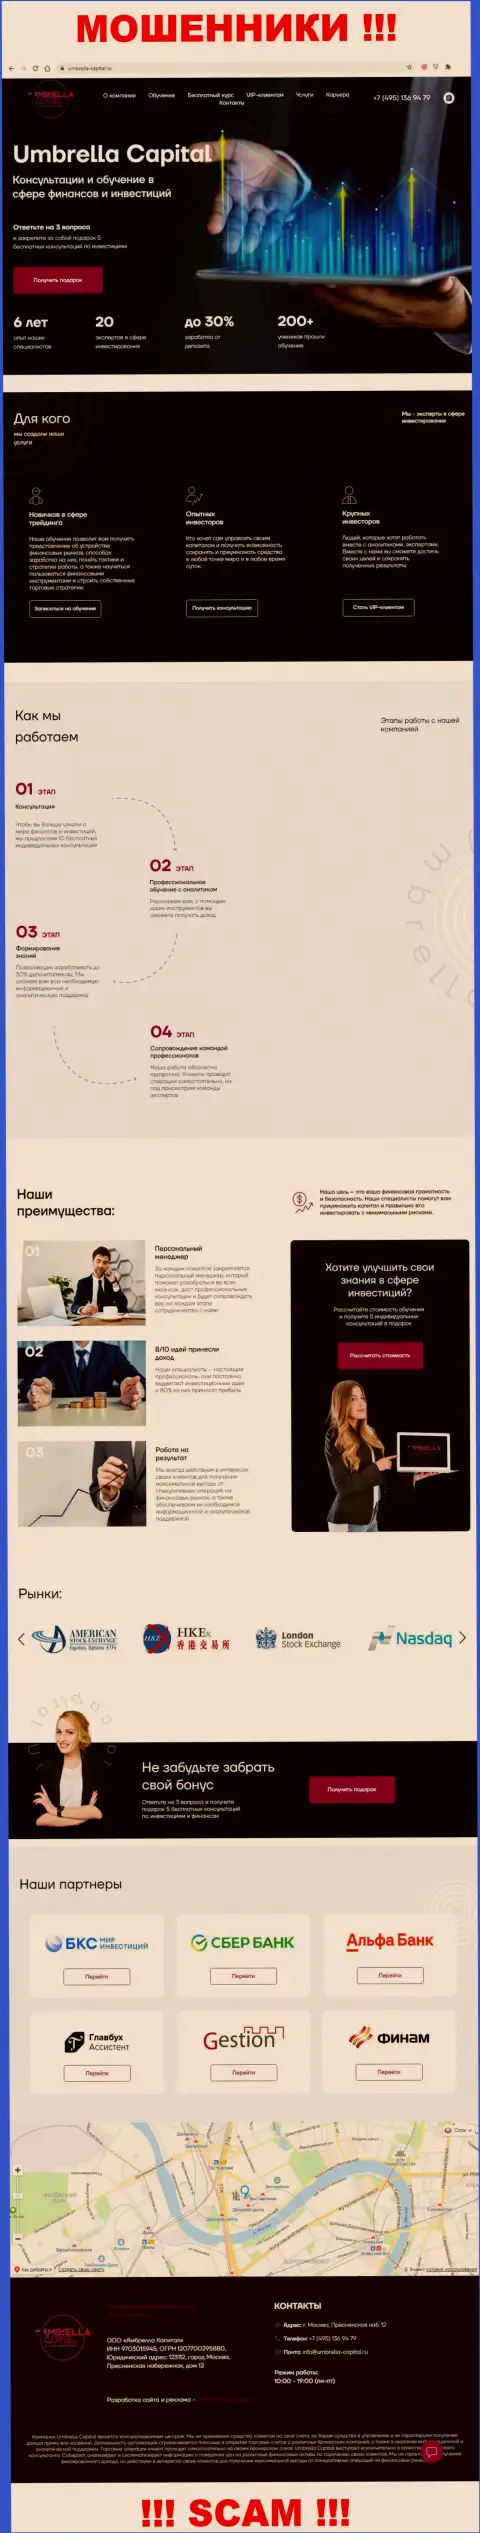 Внешний вид официального сайта мошеннической организации Umbrella-Capital Ru